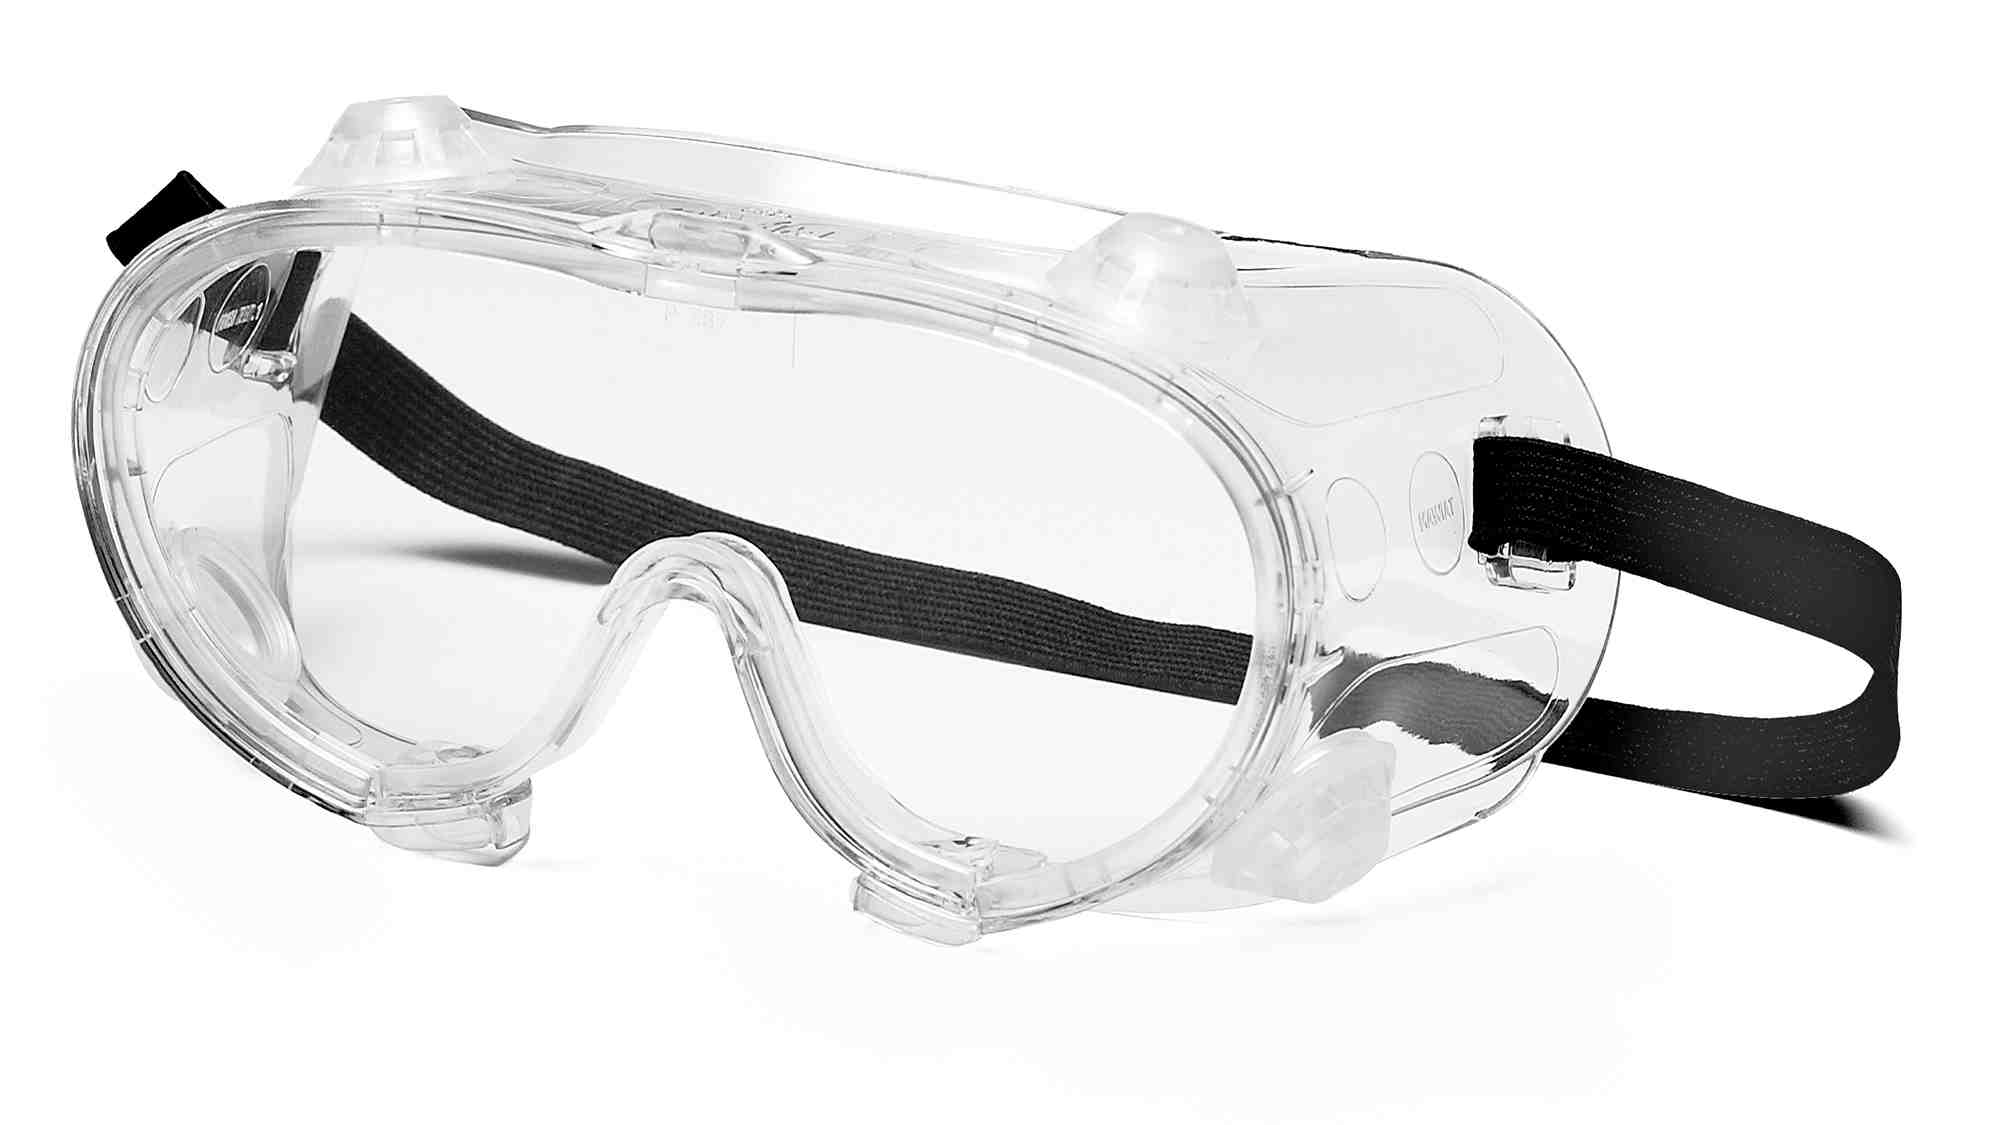 Химические защитные очки. ANSI Z87.1 очки. Очки защитные g-07-130 Clear. Очки газосварщика ANSI Z87.1. Очки газосварщика Ампаро премиум (222503).